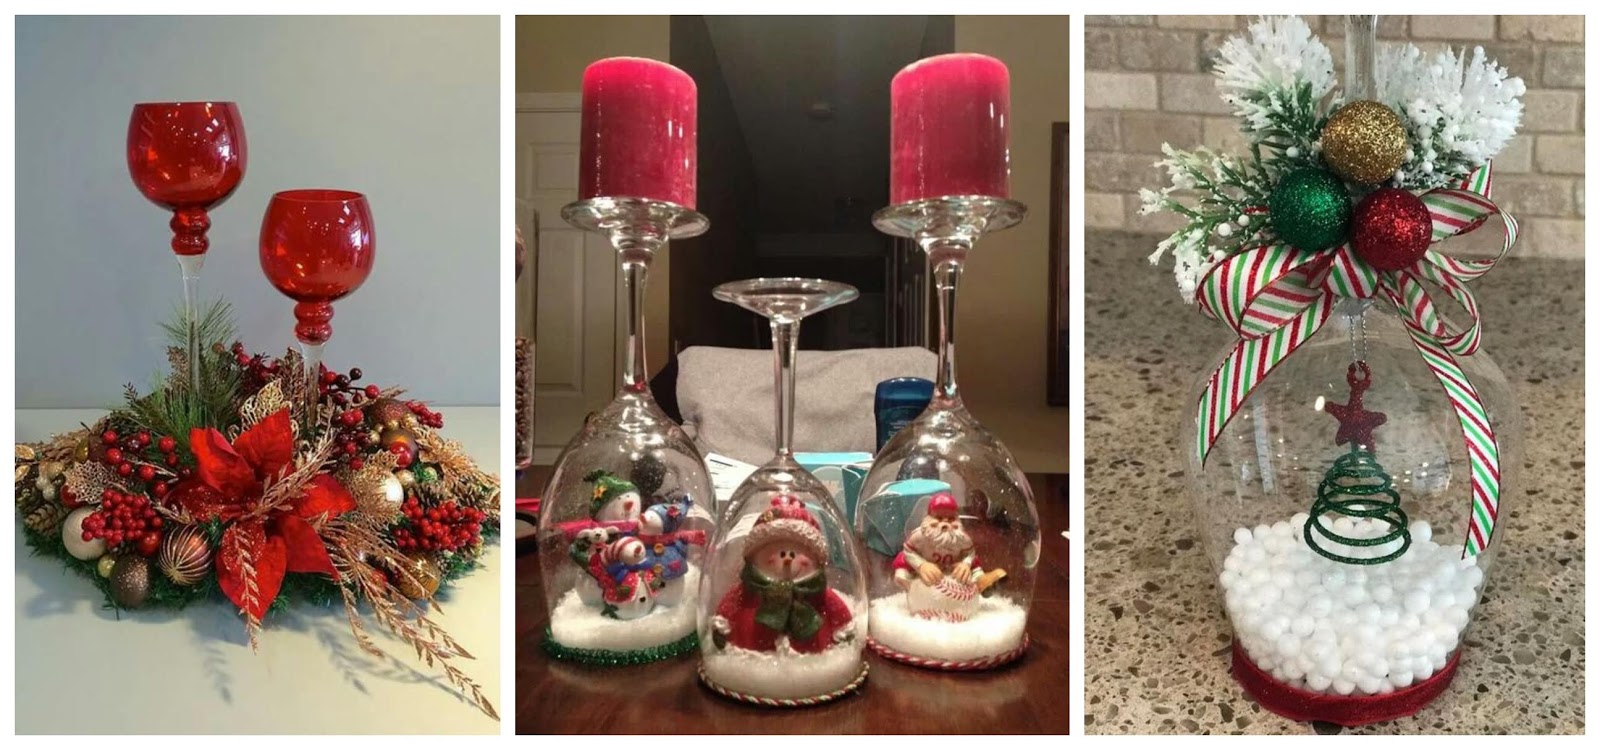 Haz los mejores adornos navideños usando copas de vidrio ~ cositasconmesh